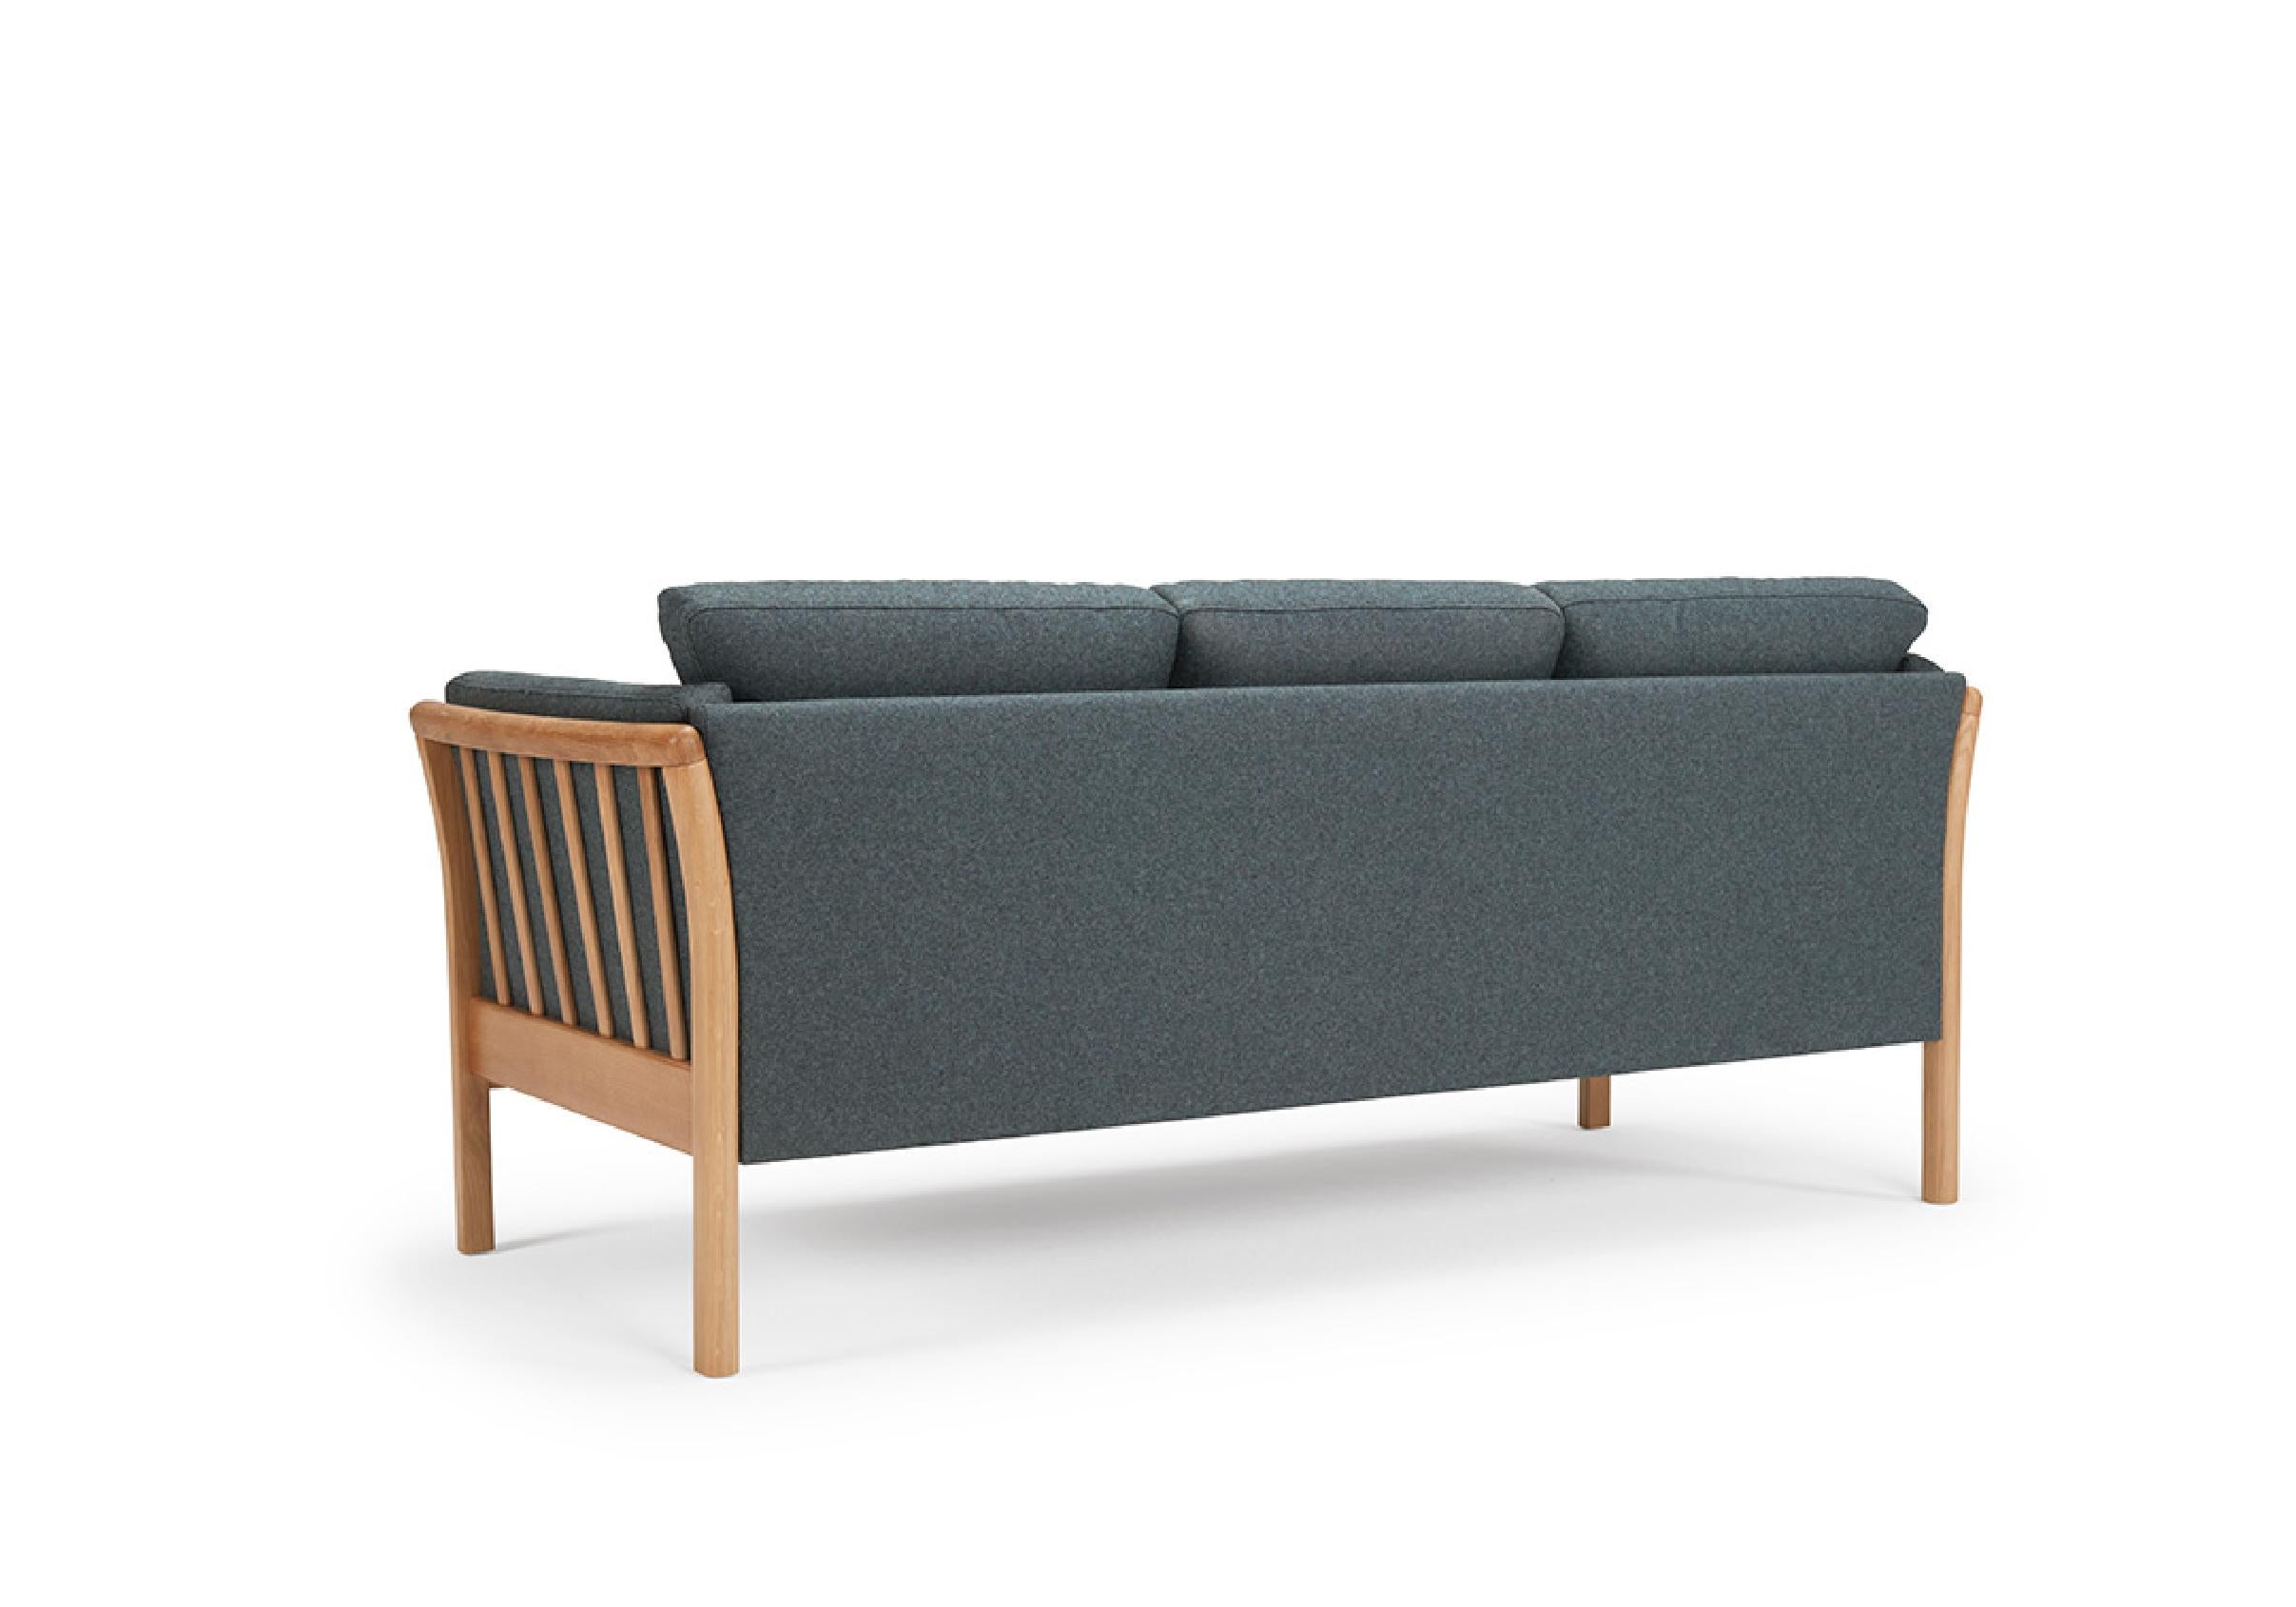 Le canapé 3 places Oscar capture l'essence du design moderne scandinave classique du milieu du siècle. Ce produit OEM offre une gamme de finitions en bois pour les pieds et une variété d'options de rembourrage en tissu ou en cuir. Conçu dans un